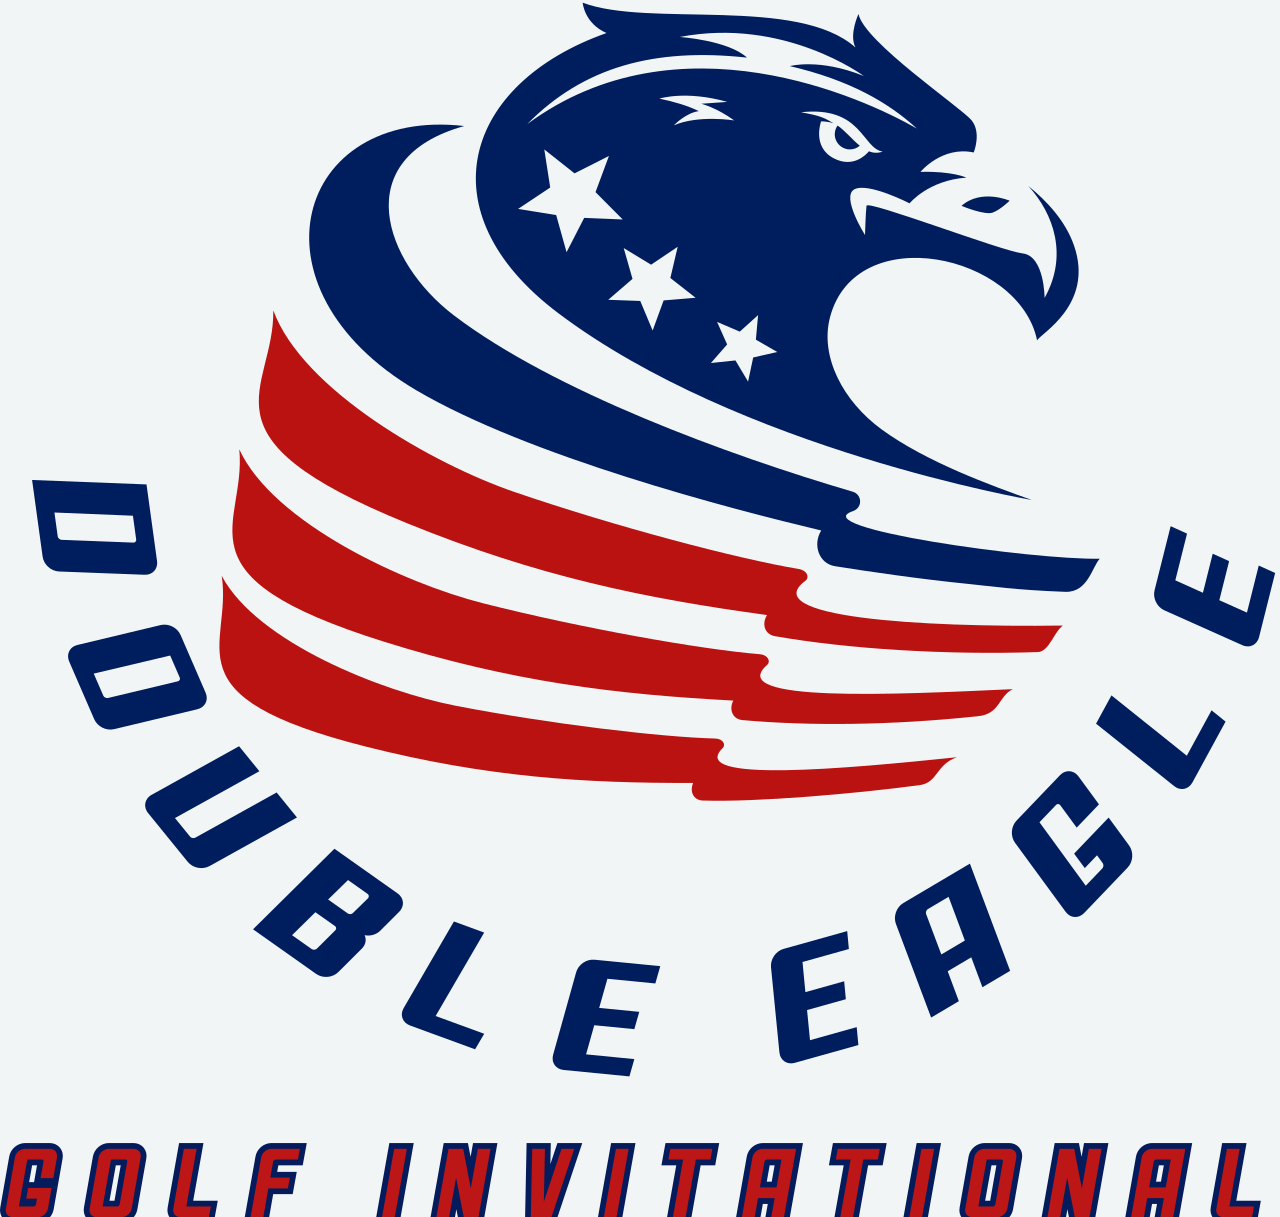 Double Eagle 's logo